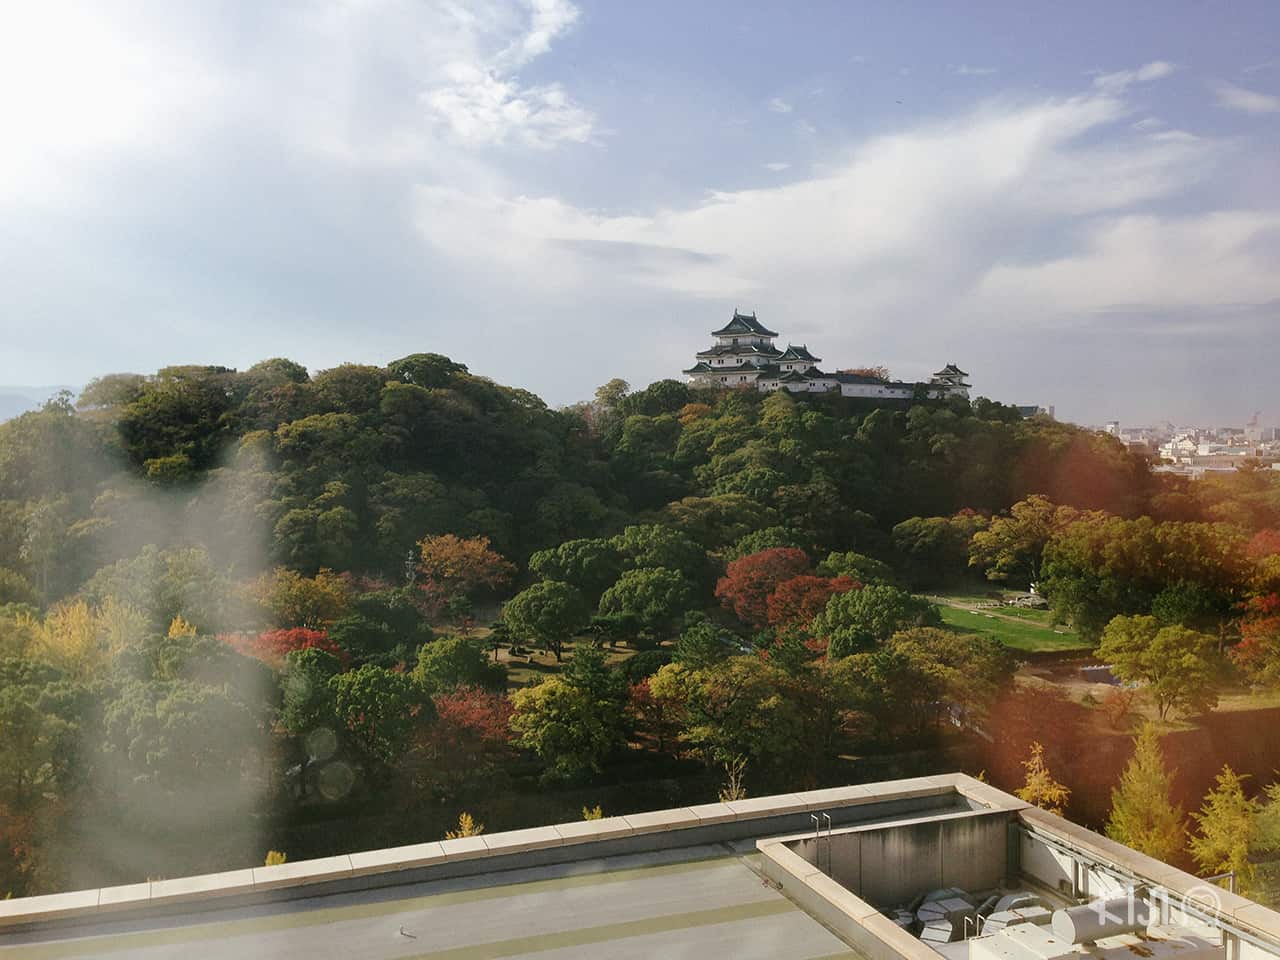 รอบปราสาทวากายามะ (Wakayama Castle) มีสวยขนาดใหญ่ปกคลุมอยู่